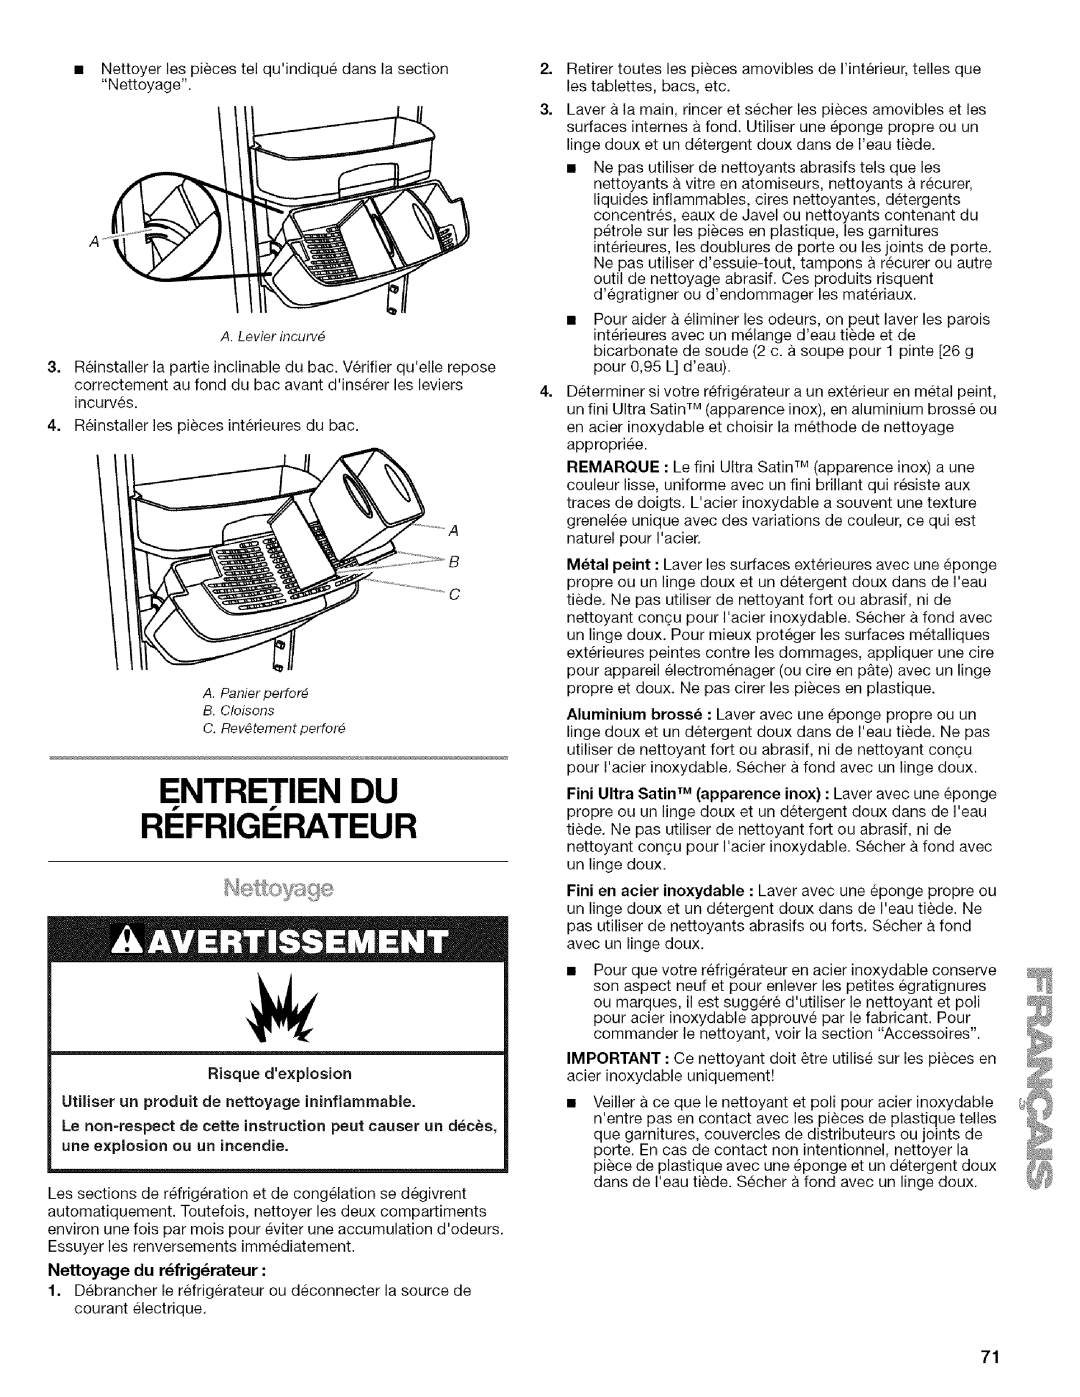 Kenmore WI0151336A manual Entretien Du Ri Frigi Rateur, A.Levier incurv_, Risque dexplosion, Nettoyage du r_frig_rateur 